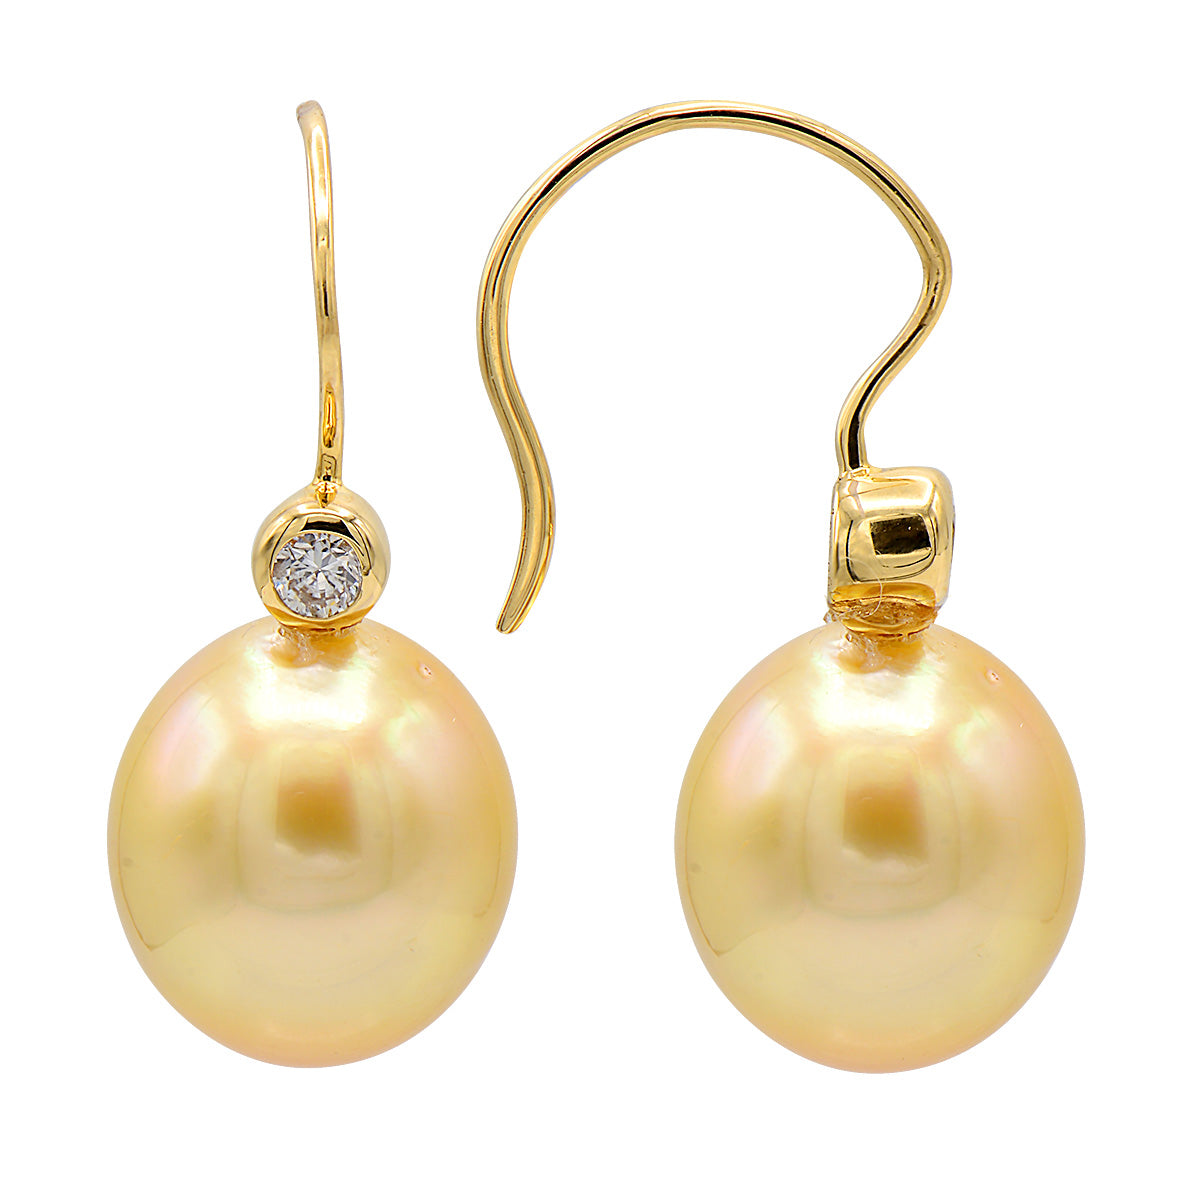 18KY Golden South Sea Pearl Earrings, 11-12mm